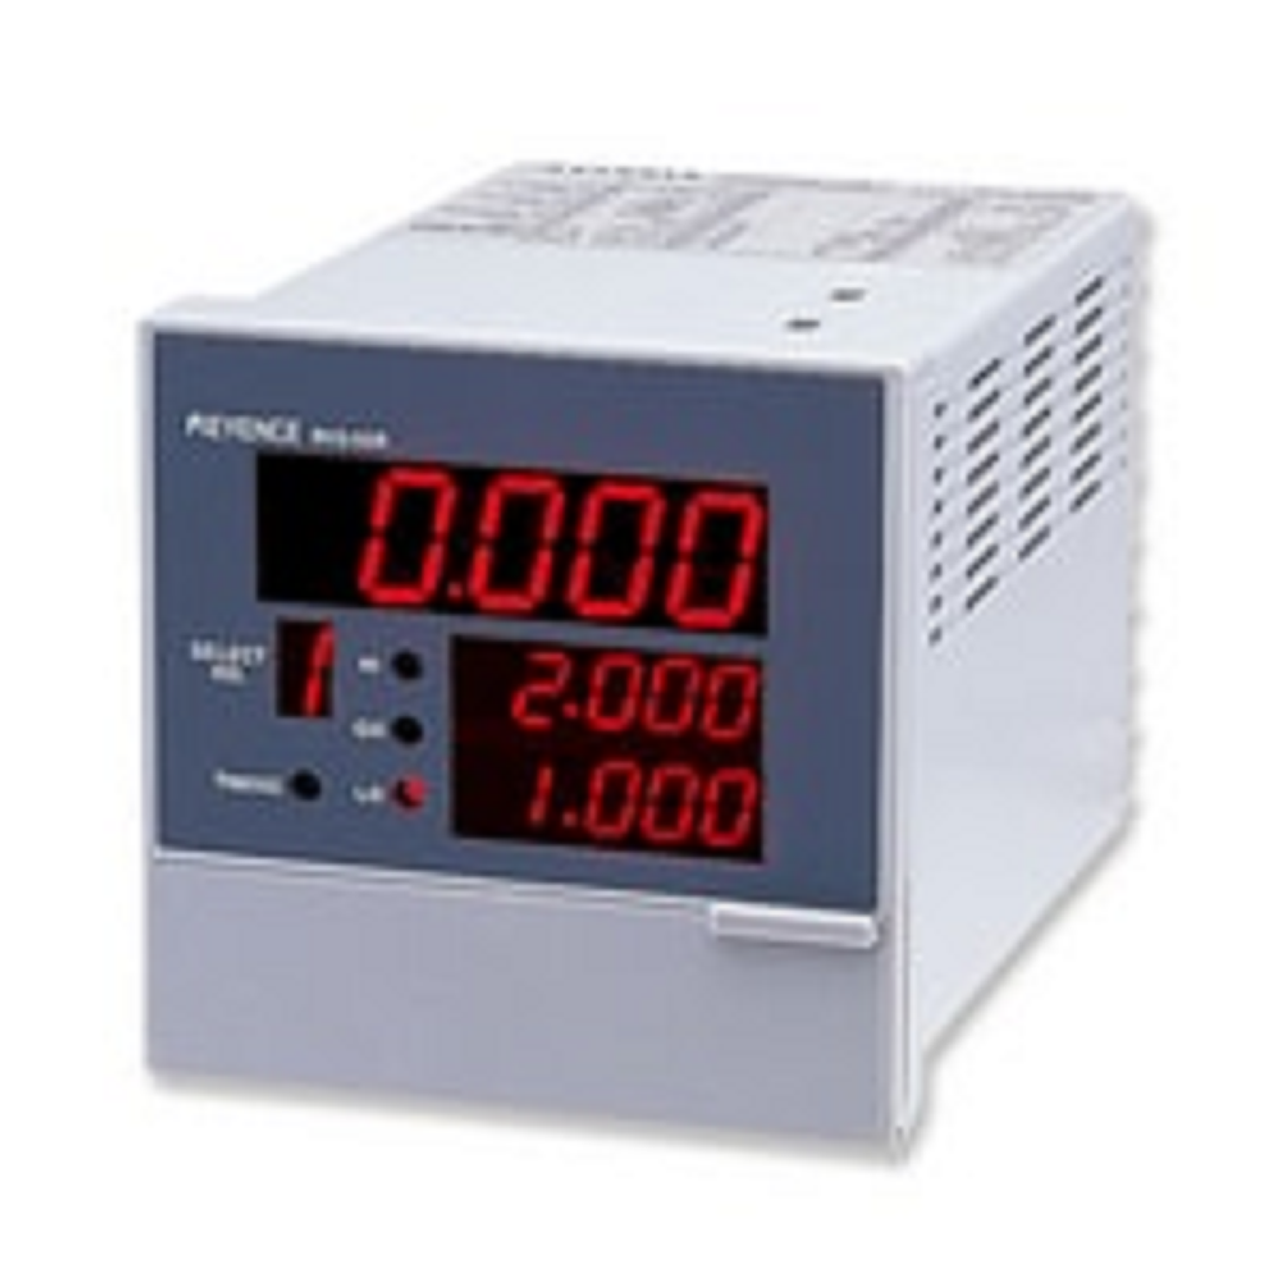 Keyence RV3-55R Multifunctional Digital Meter Relay [New]